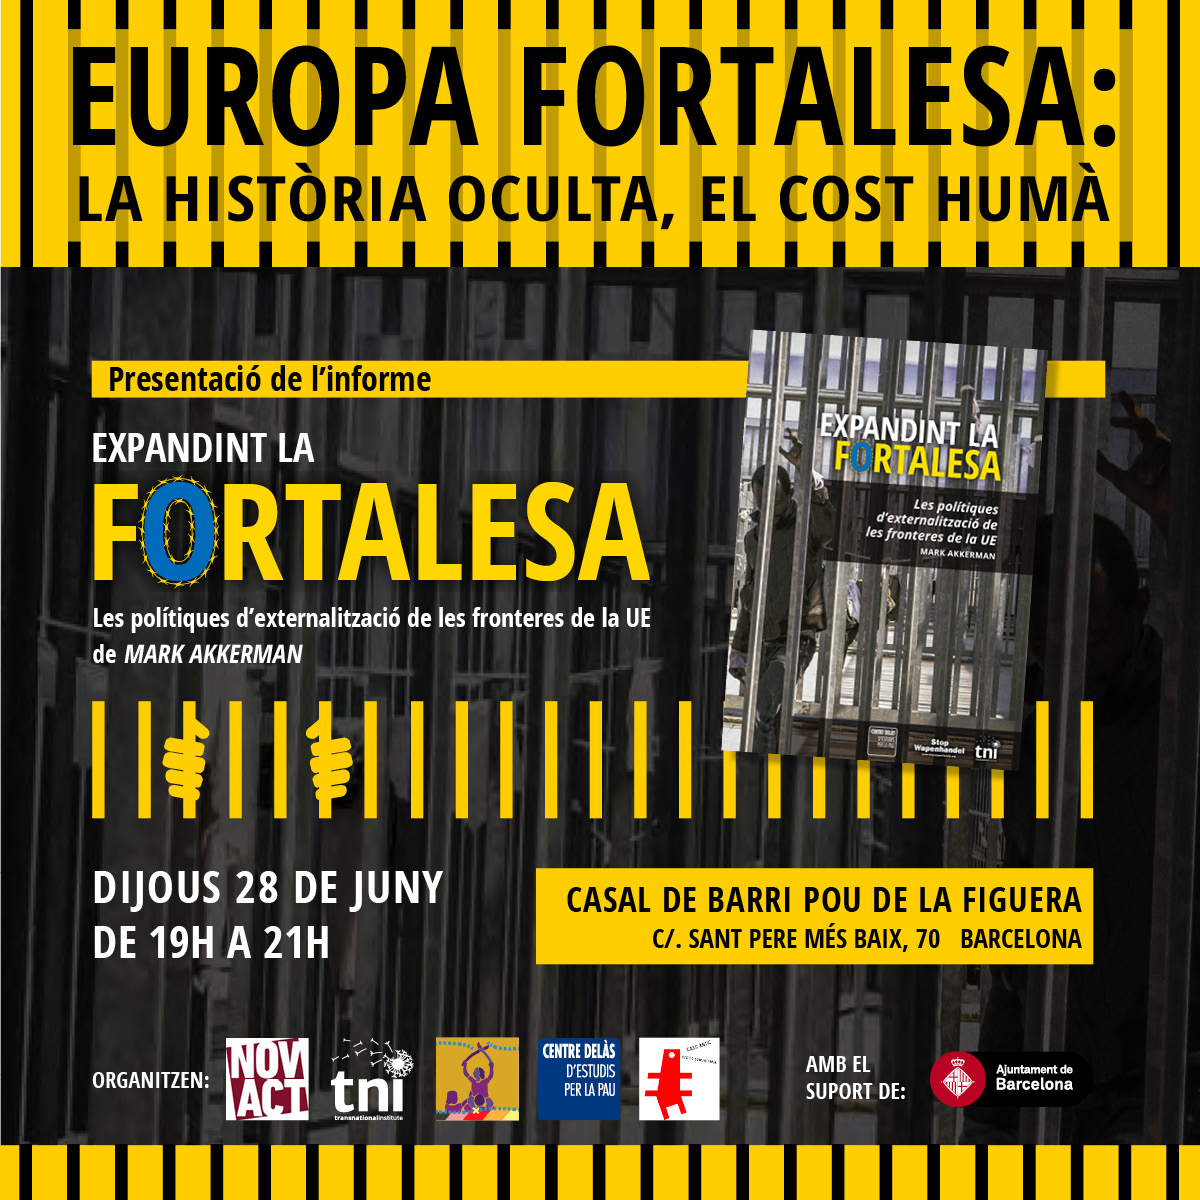 europa fortaleza event facebook v2